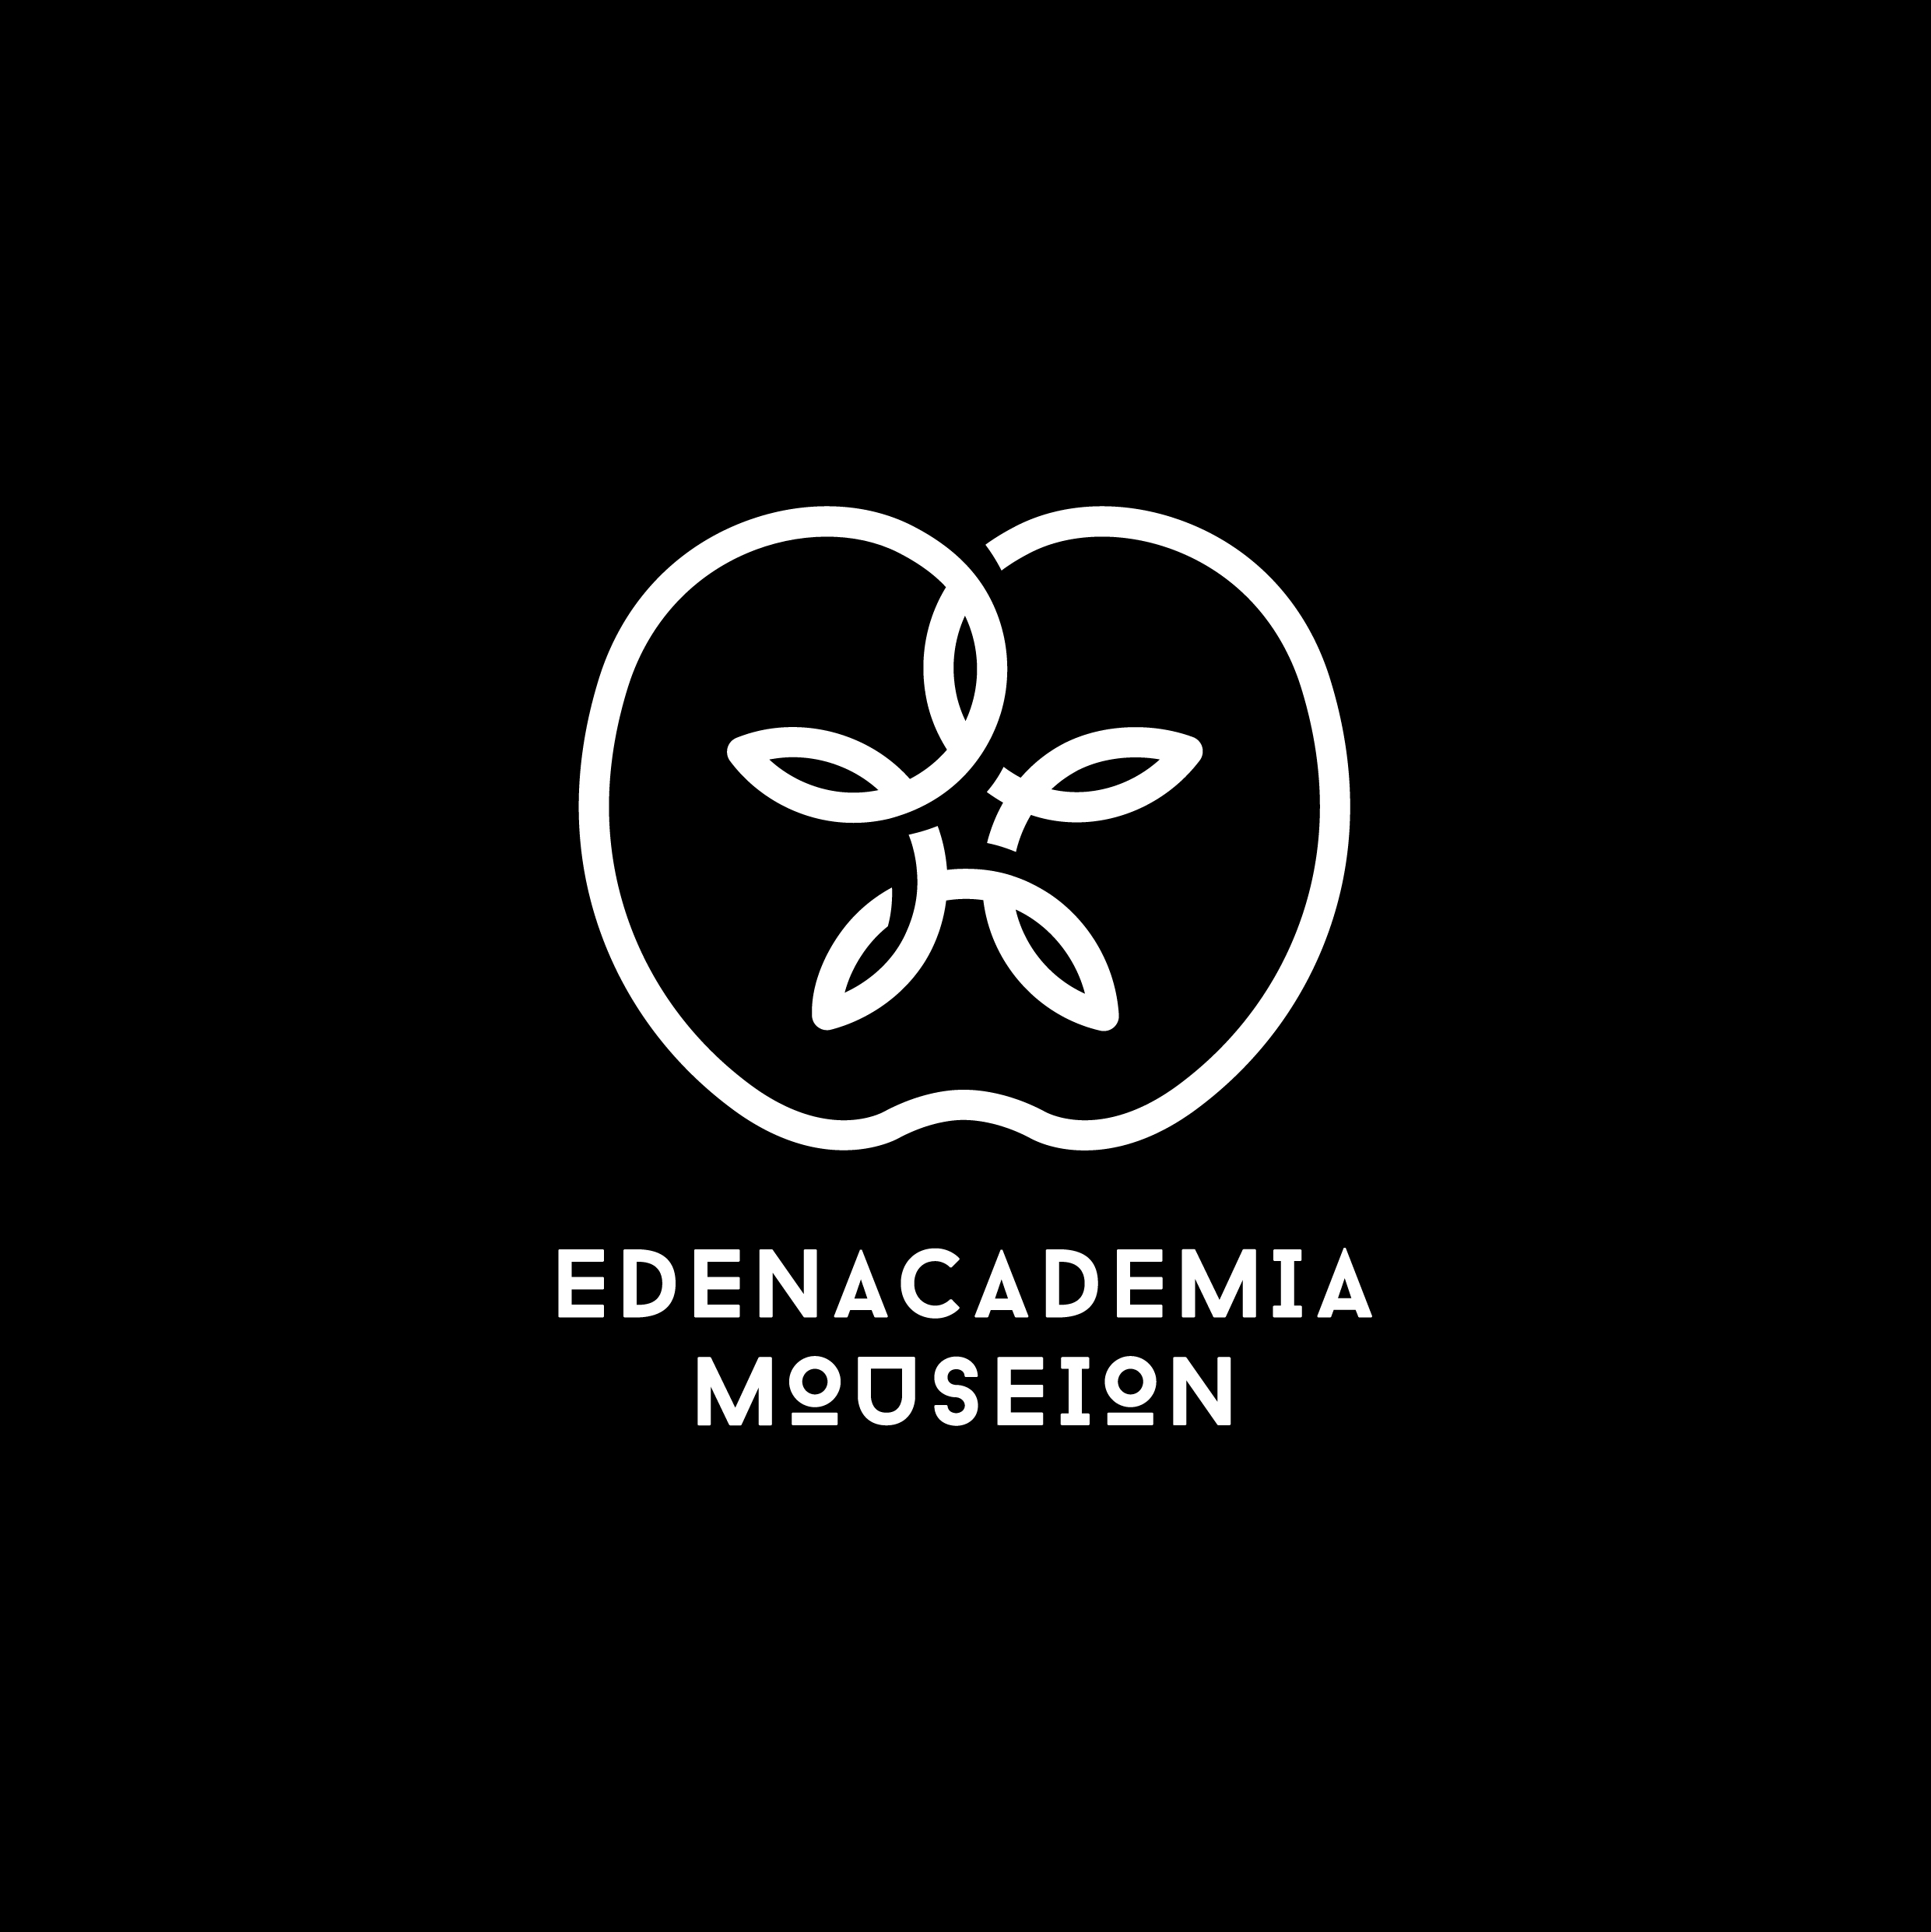 EDENACADEMIA_MOUSEION_LOGO_21x21cm_2